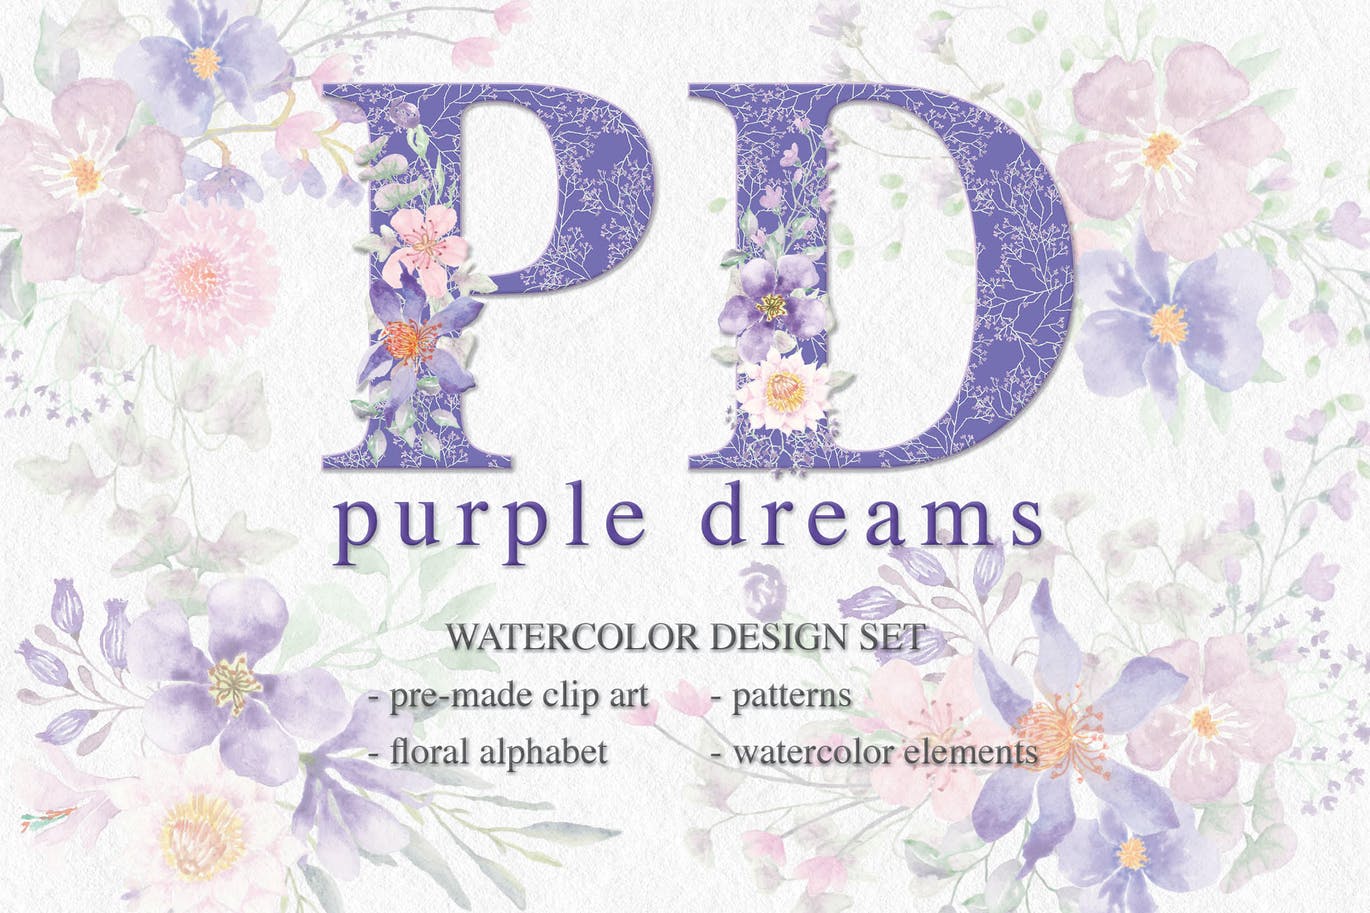 紫色梦幻水彩花卉图案设计素材包 Purple Dreams Watercolor Design Set插图